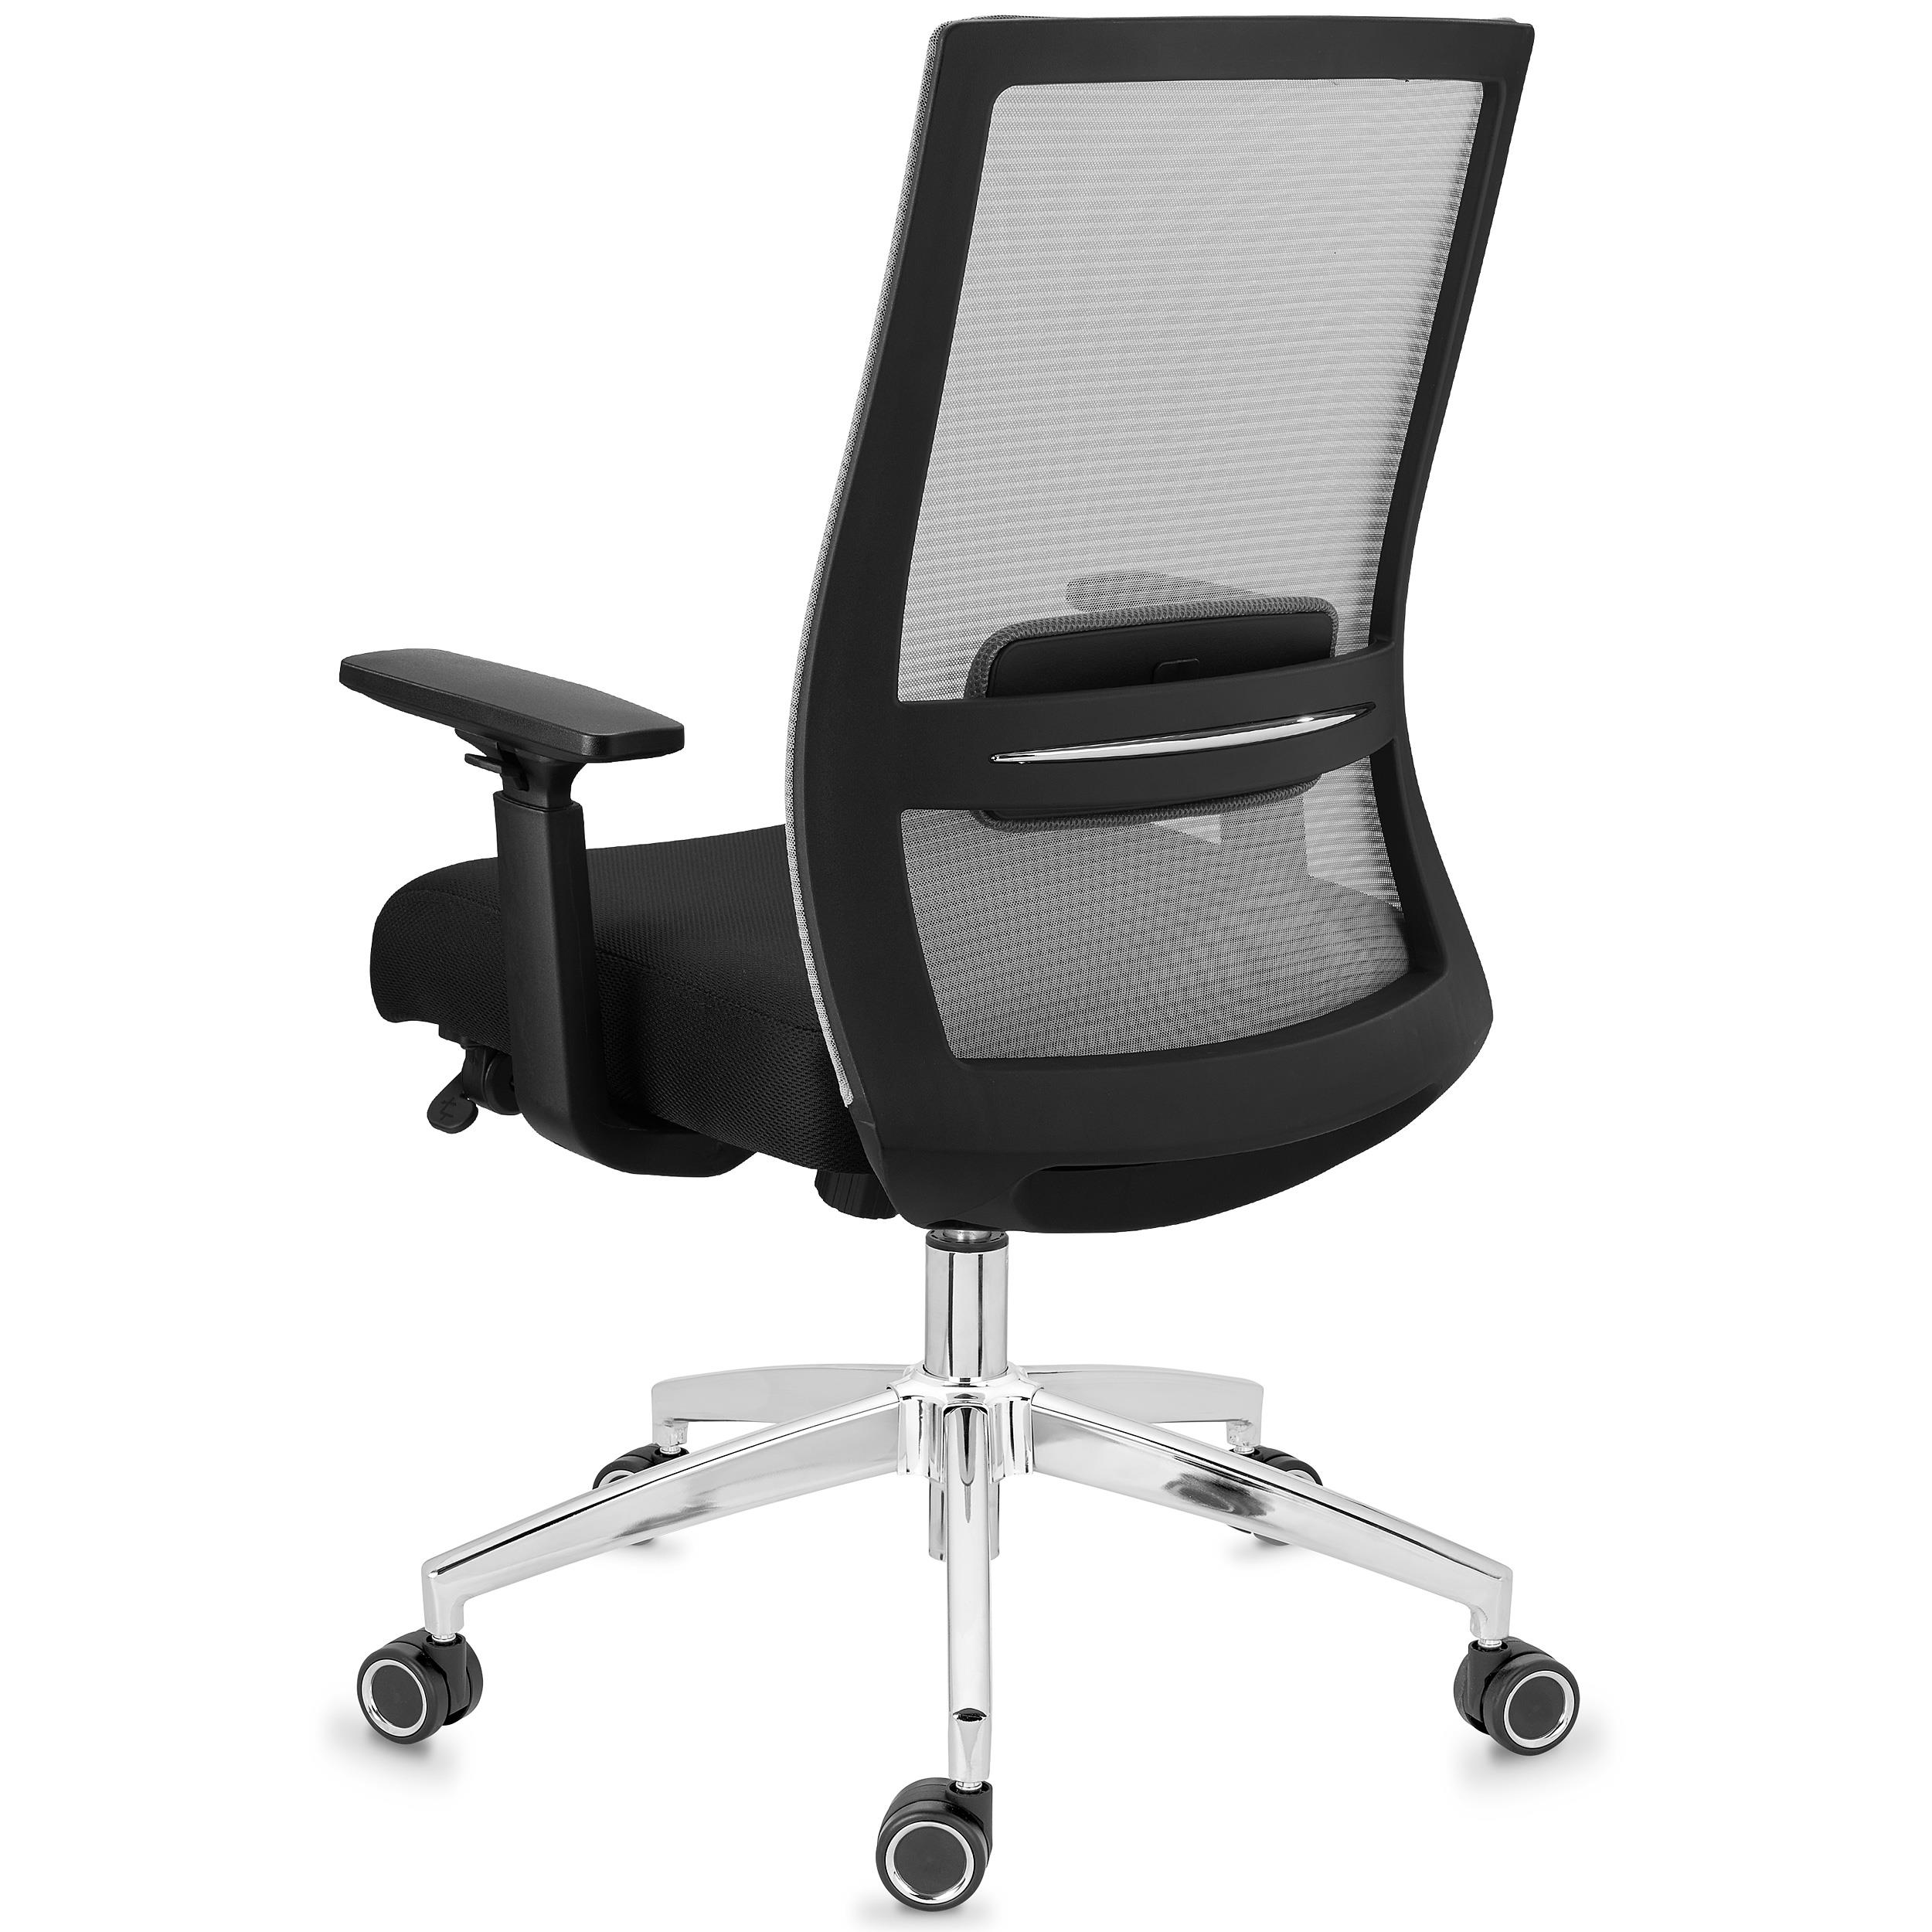 Chaise d'atelier ergonomique à contact permanent Série 25CP